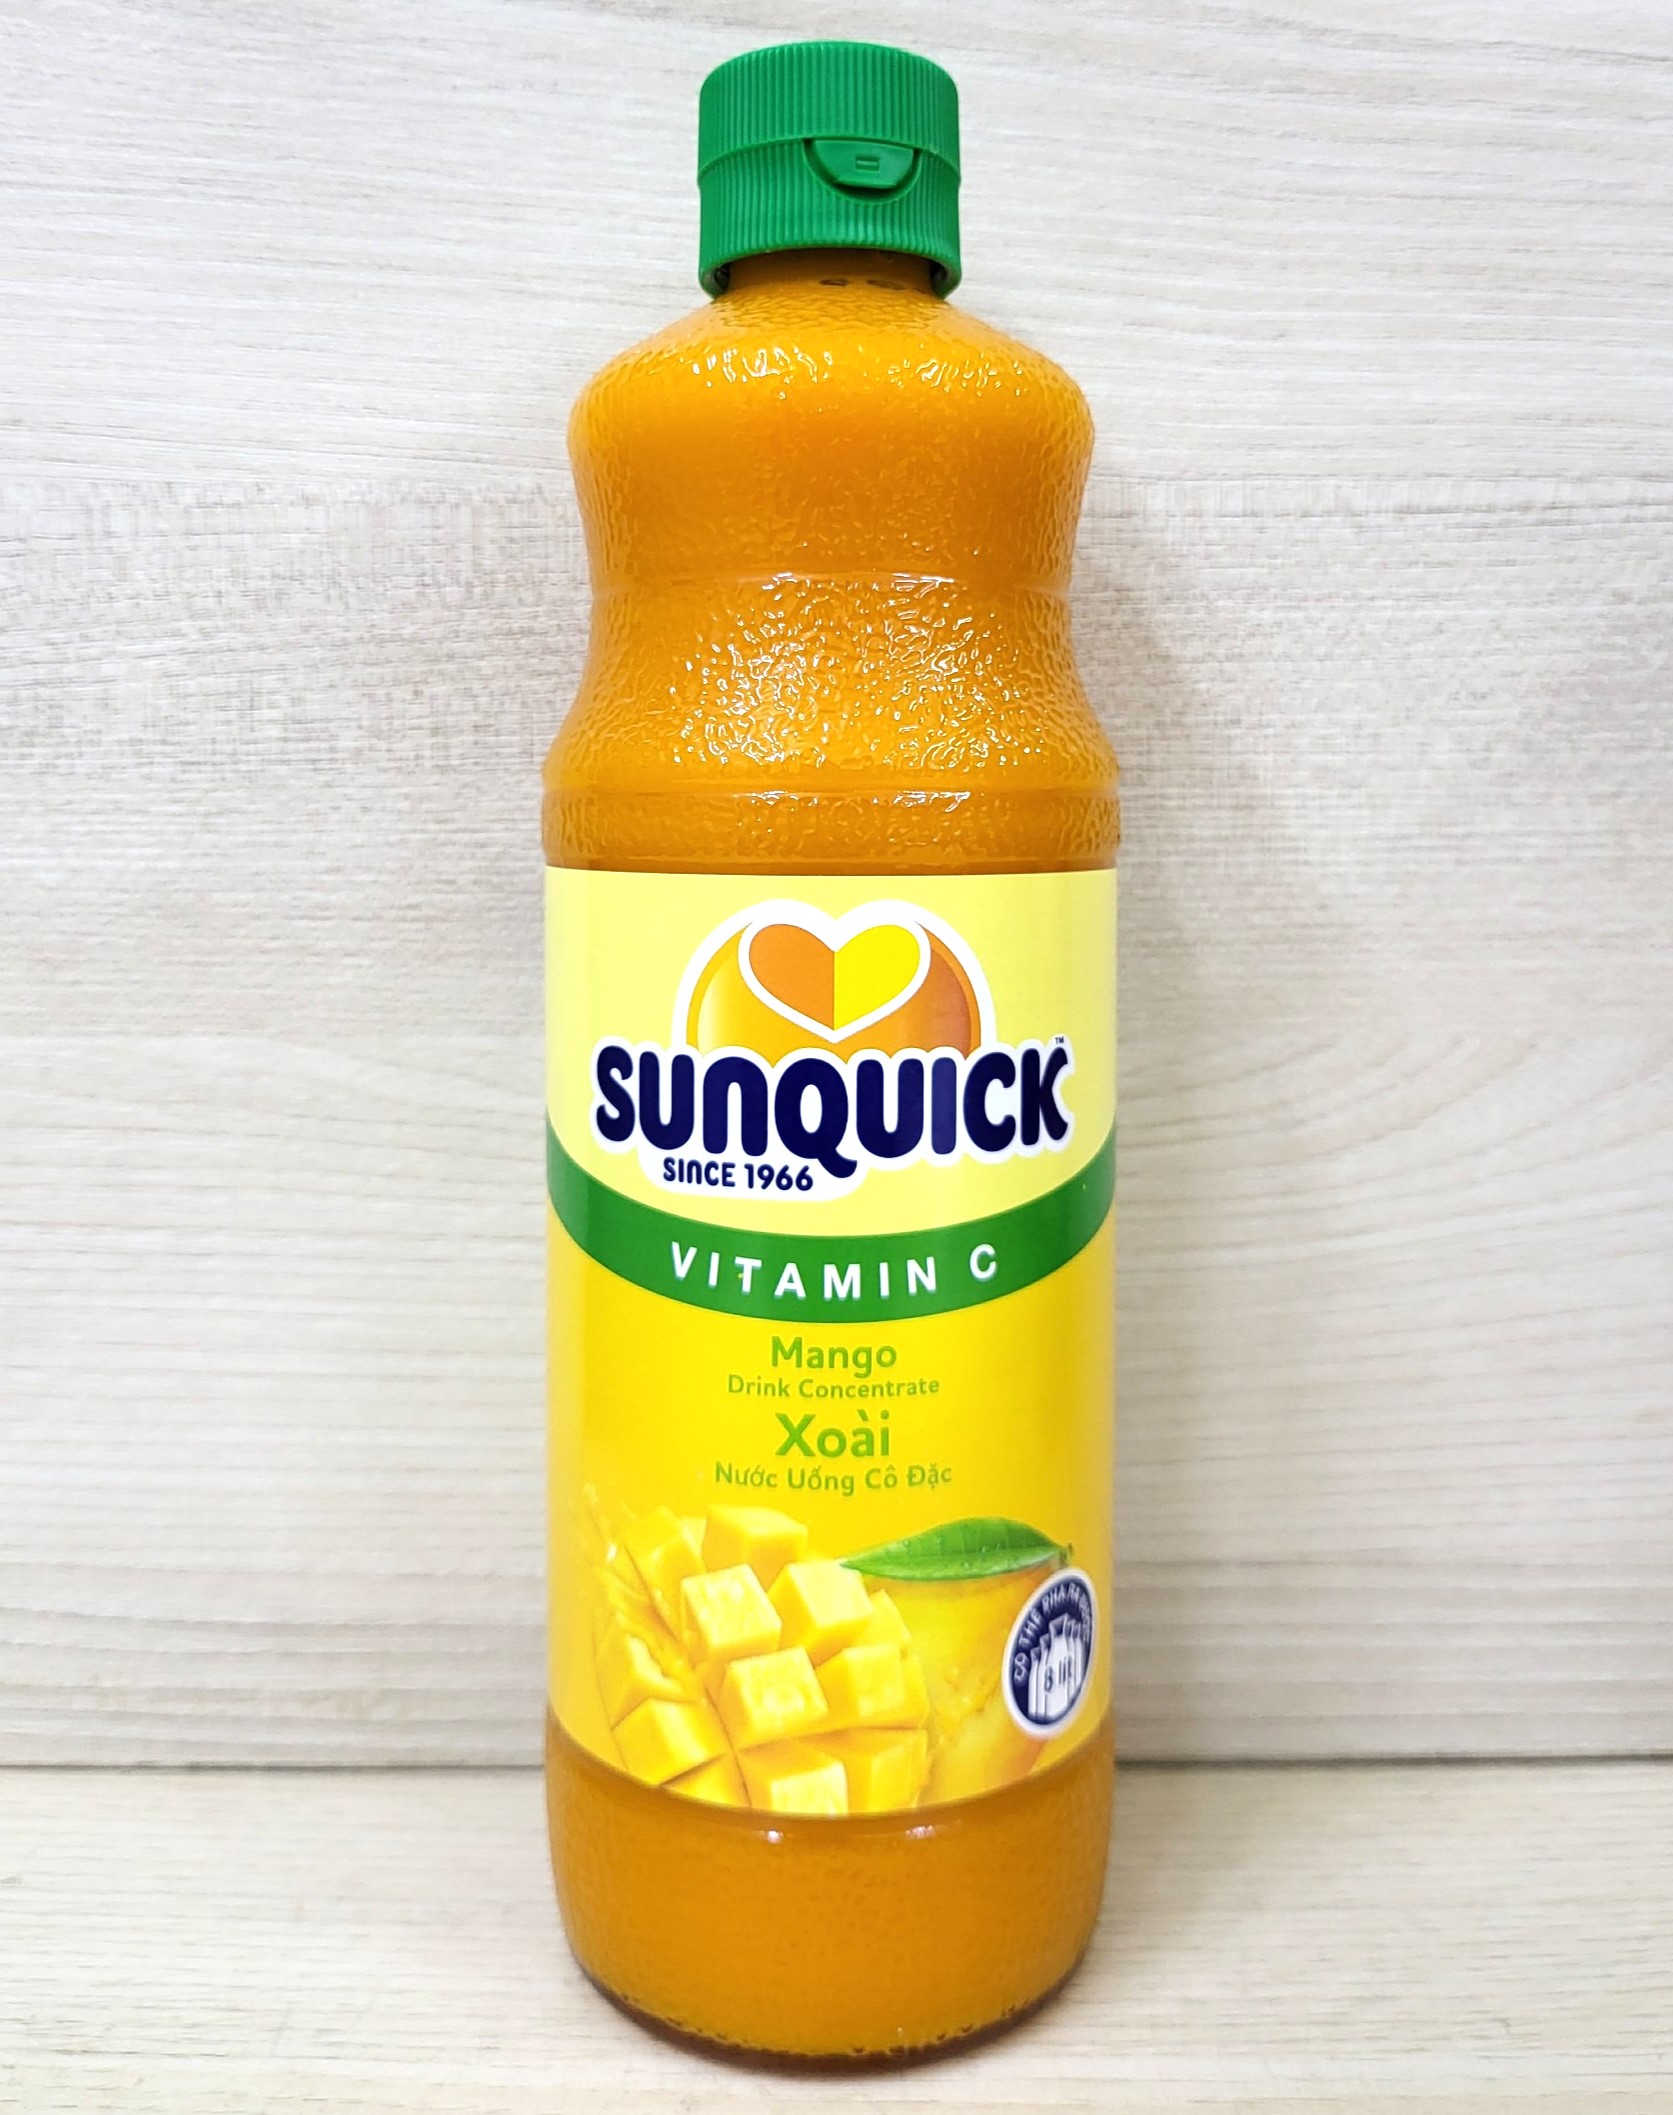 SUNQUICK chai XOÀI 800ml NƯỚC ÉP XOÀI CÔ ĐẶC Vitamin C Mango Drink